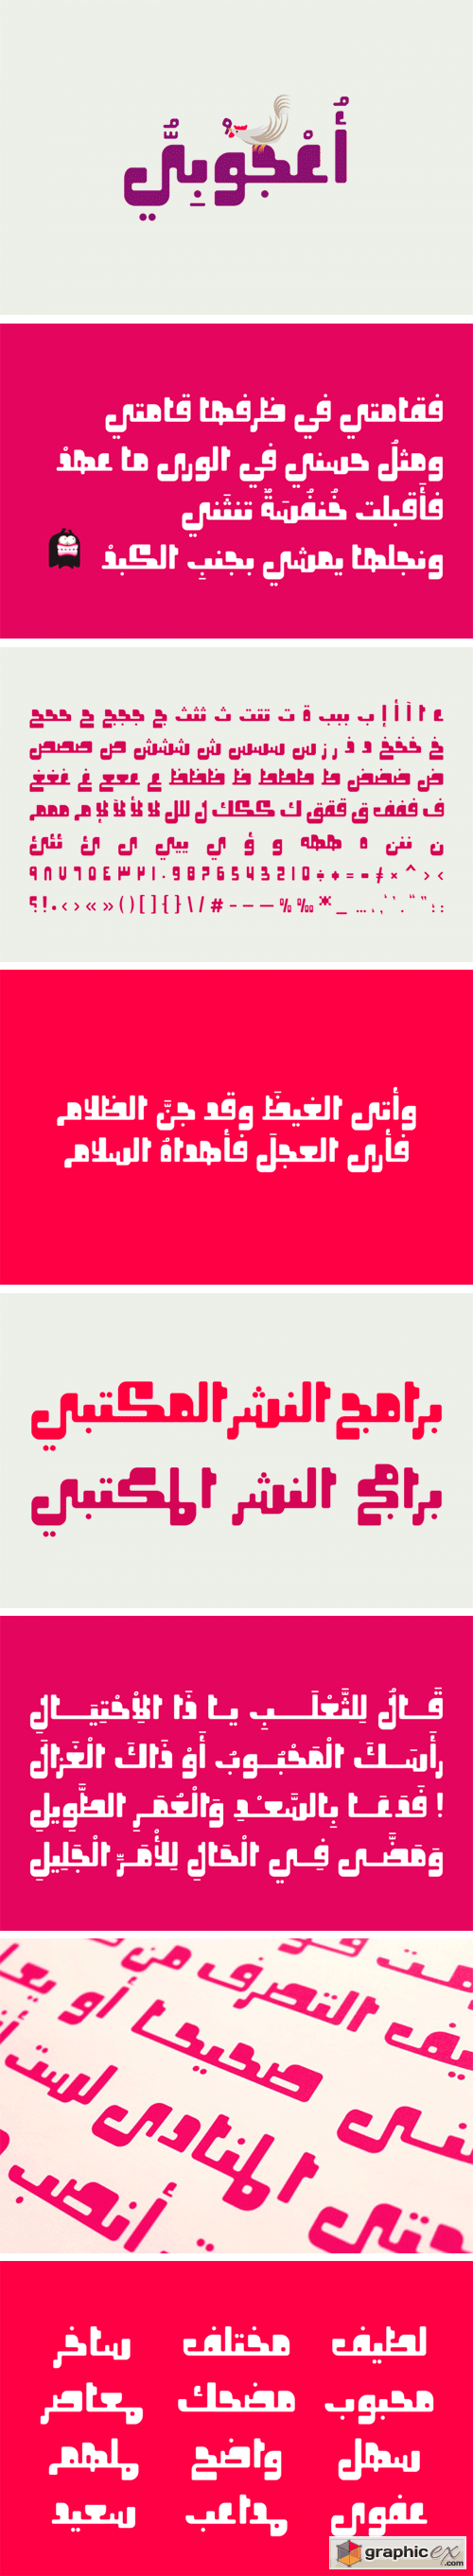 Oajoubi - Arabic Font